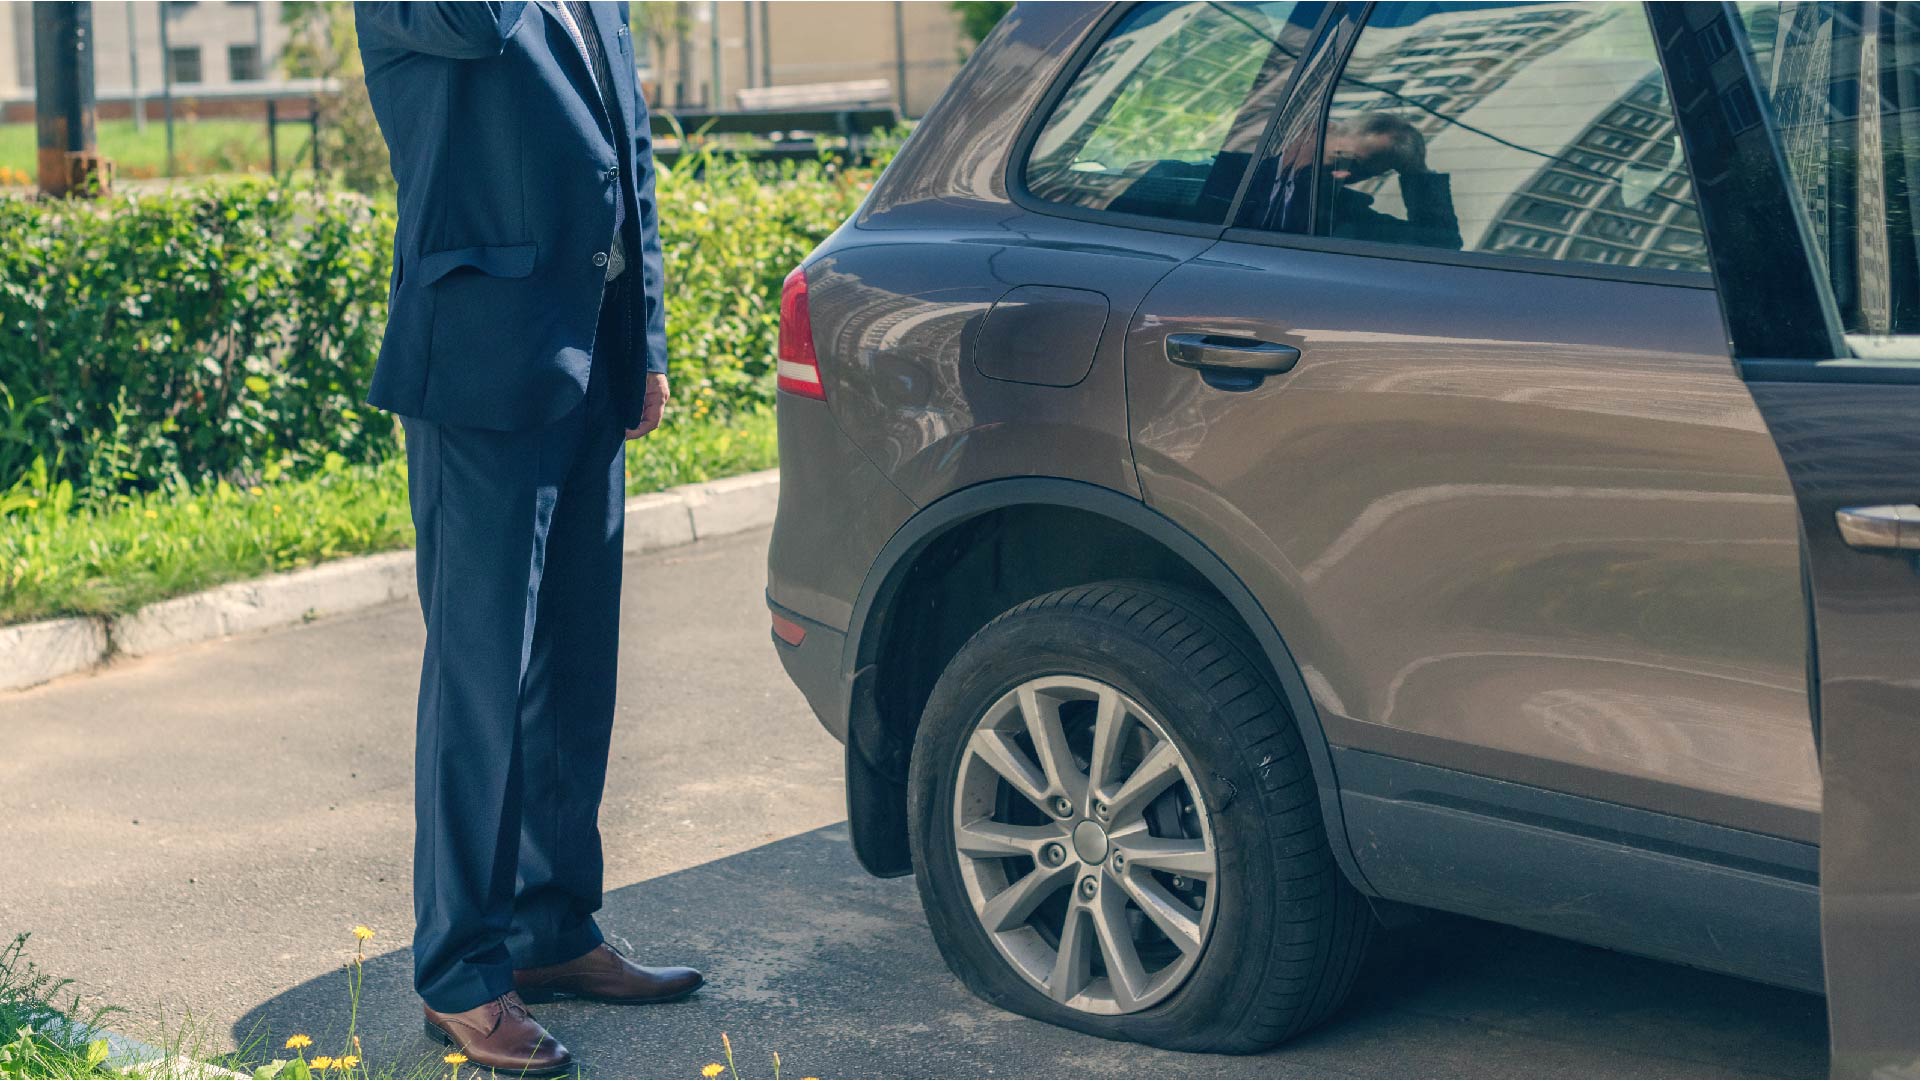 Un homme se tient près de sa voiture qui a un pneu crevé